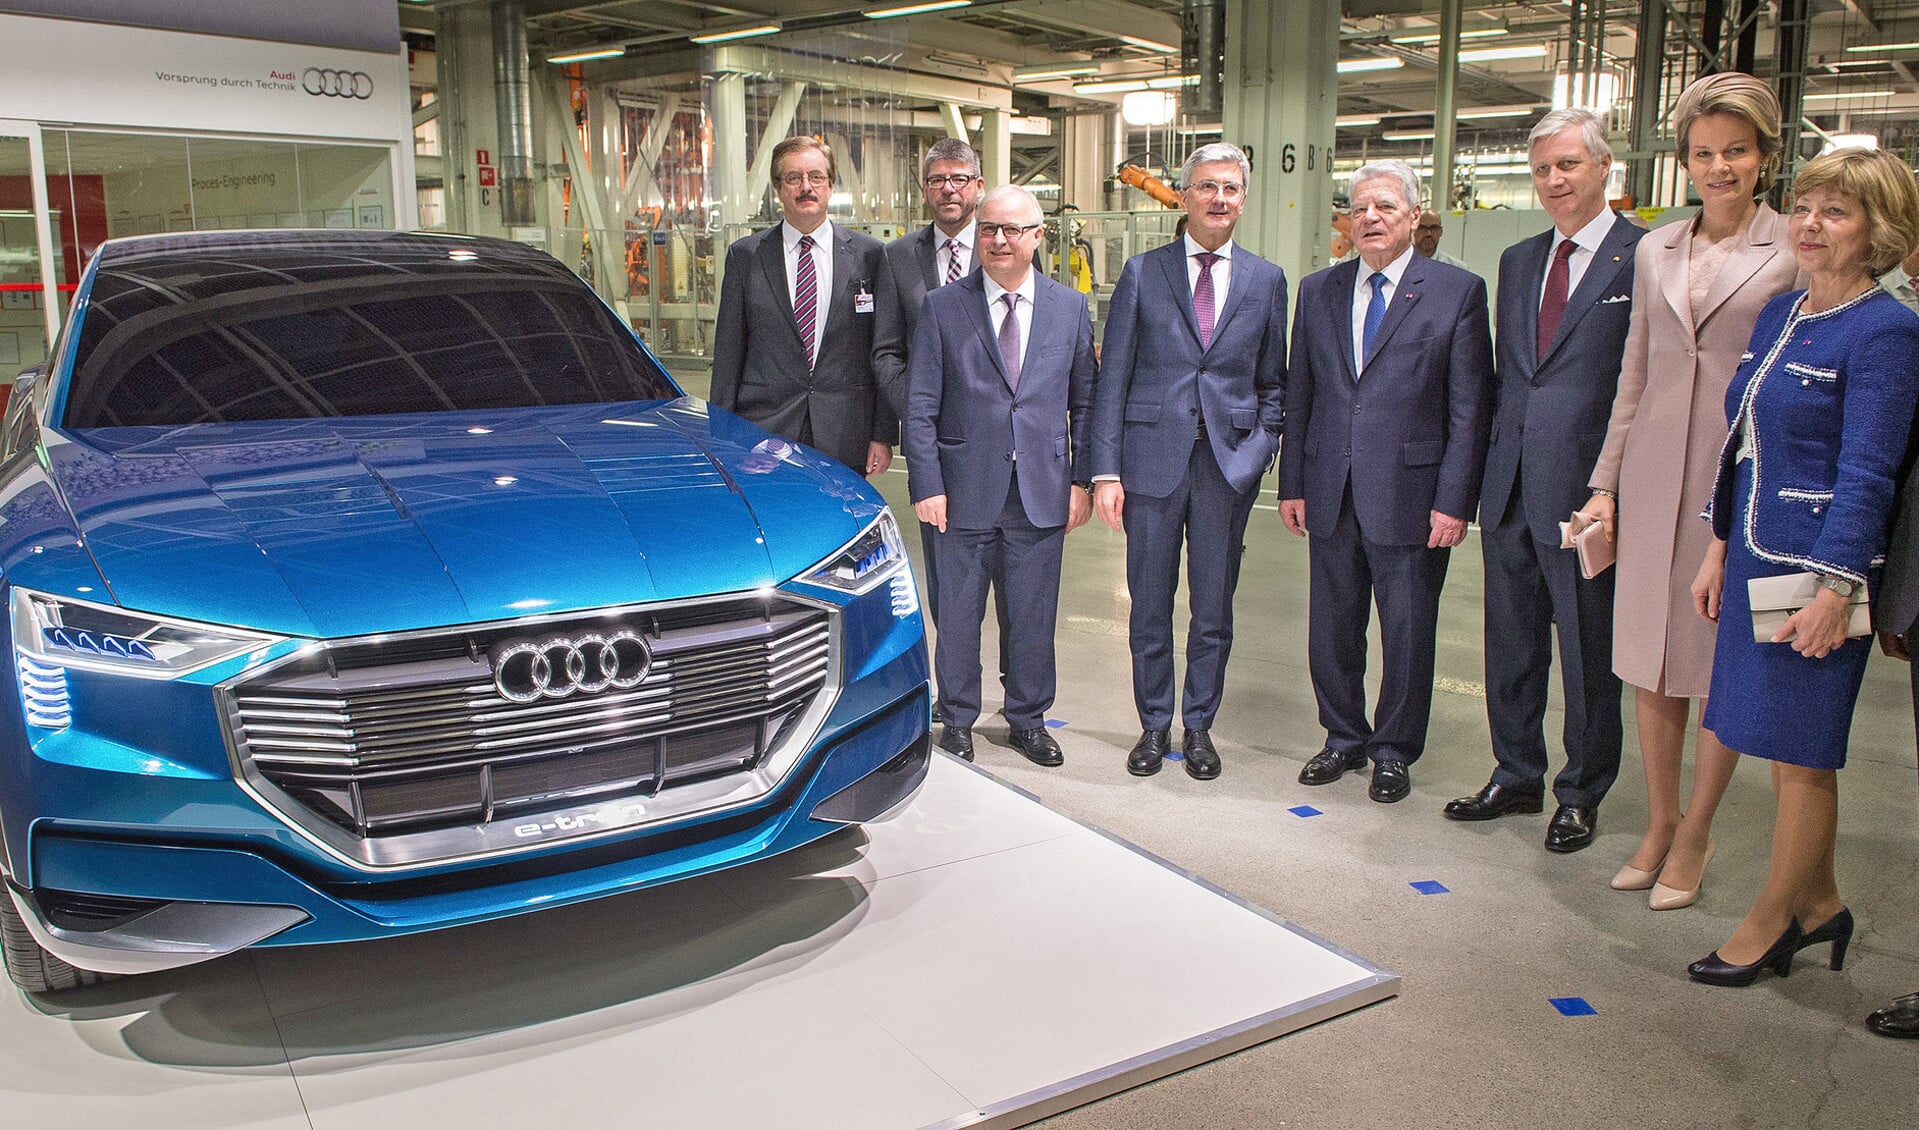 Koning Philippe en koningin Mathilde van België en de toenmalige Duitse Bondspresident Joachim Gauck en zijn vrouw Daniela Schadt poseren in 2016 bij een prototype van de e-Audi die de Belgen mogen gaan produceren.